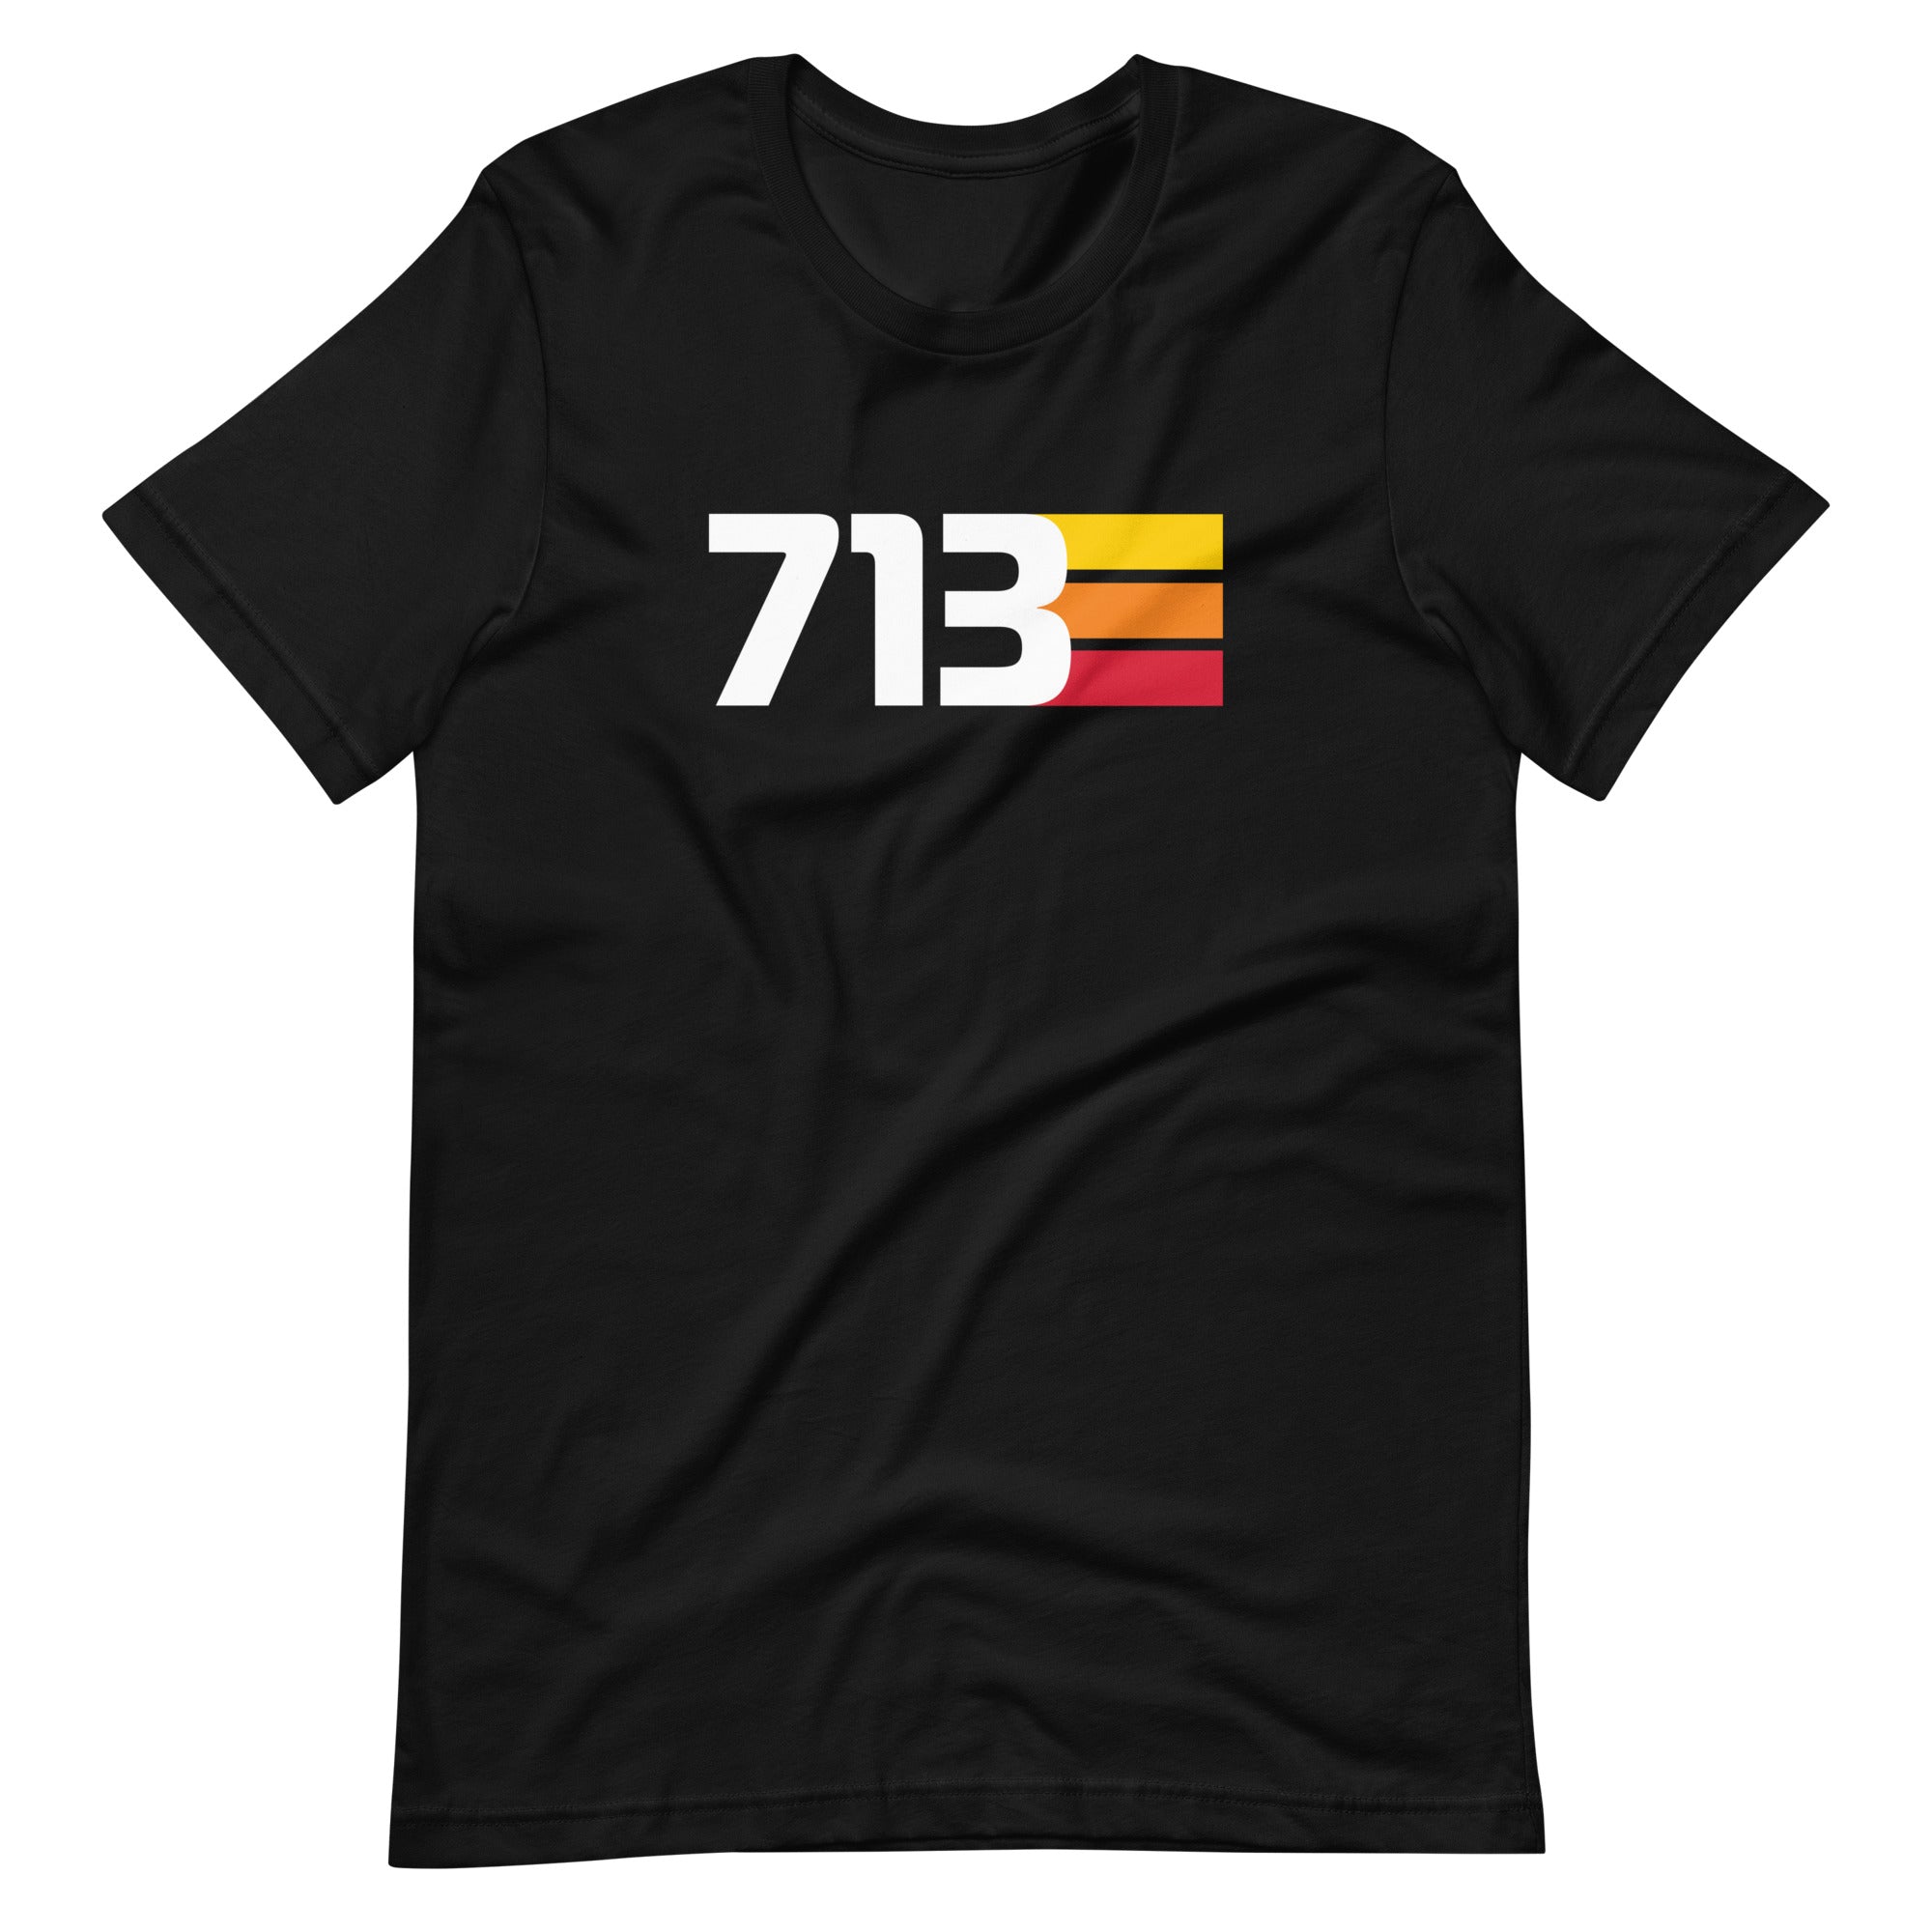 713 - Men's/Unisex Tee